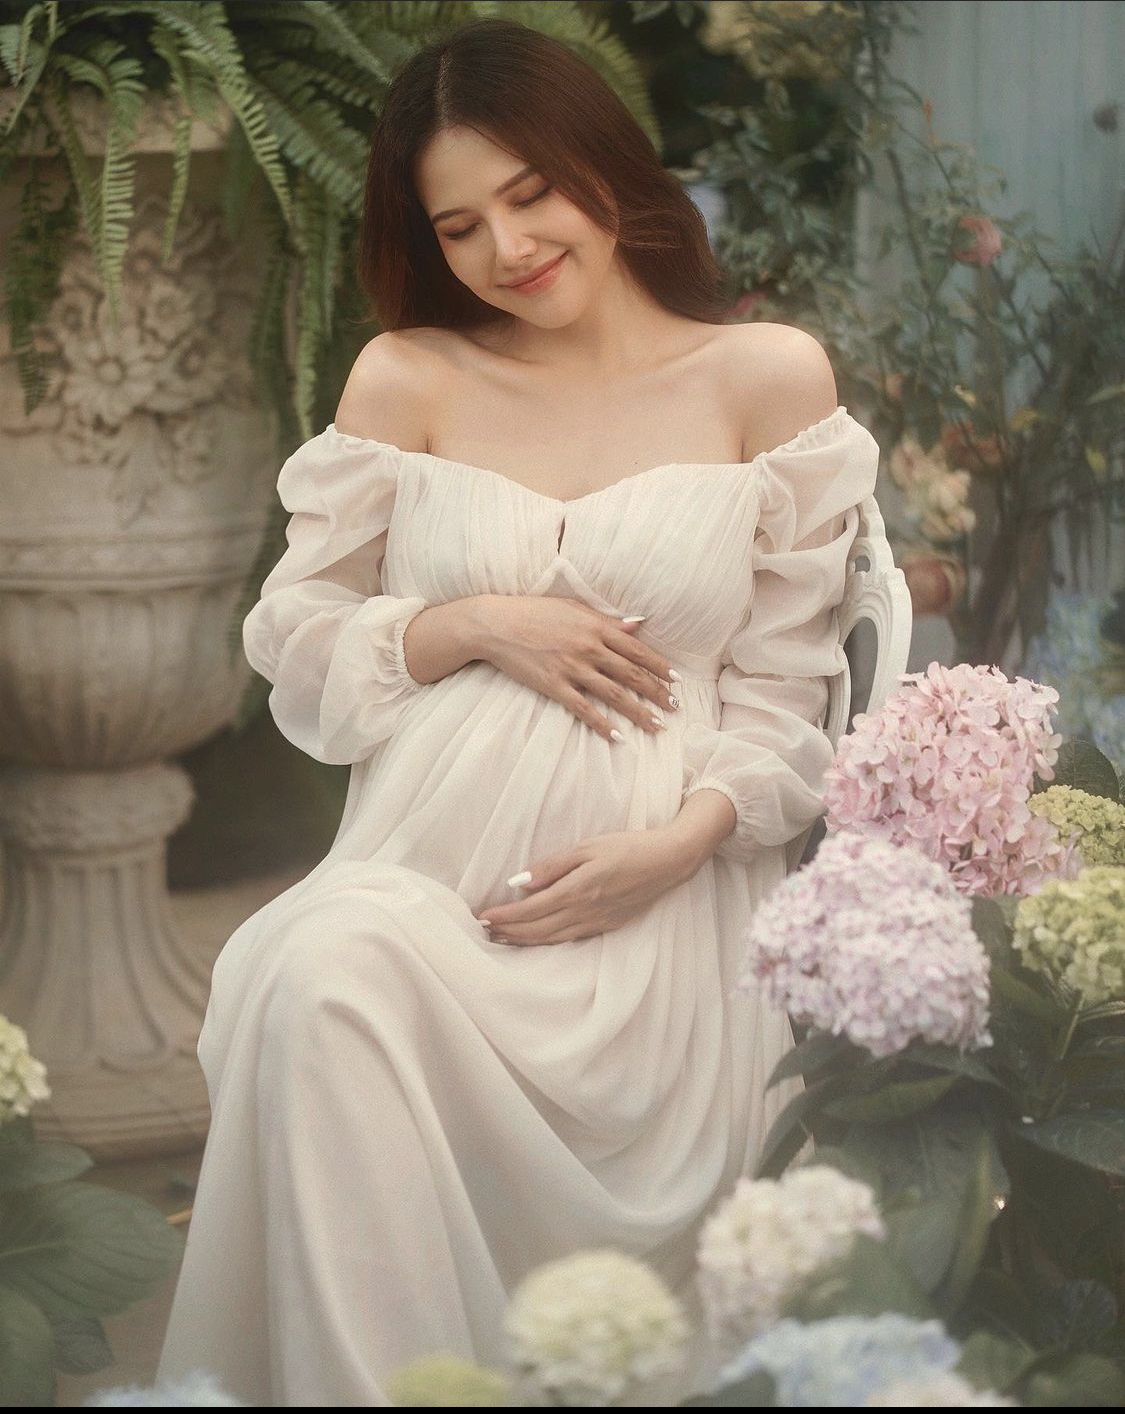 Hình ảnh Phanh Lee sinh đẹp khi mang bầu con gái Sochu.